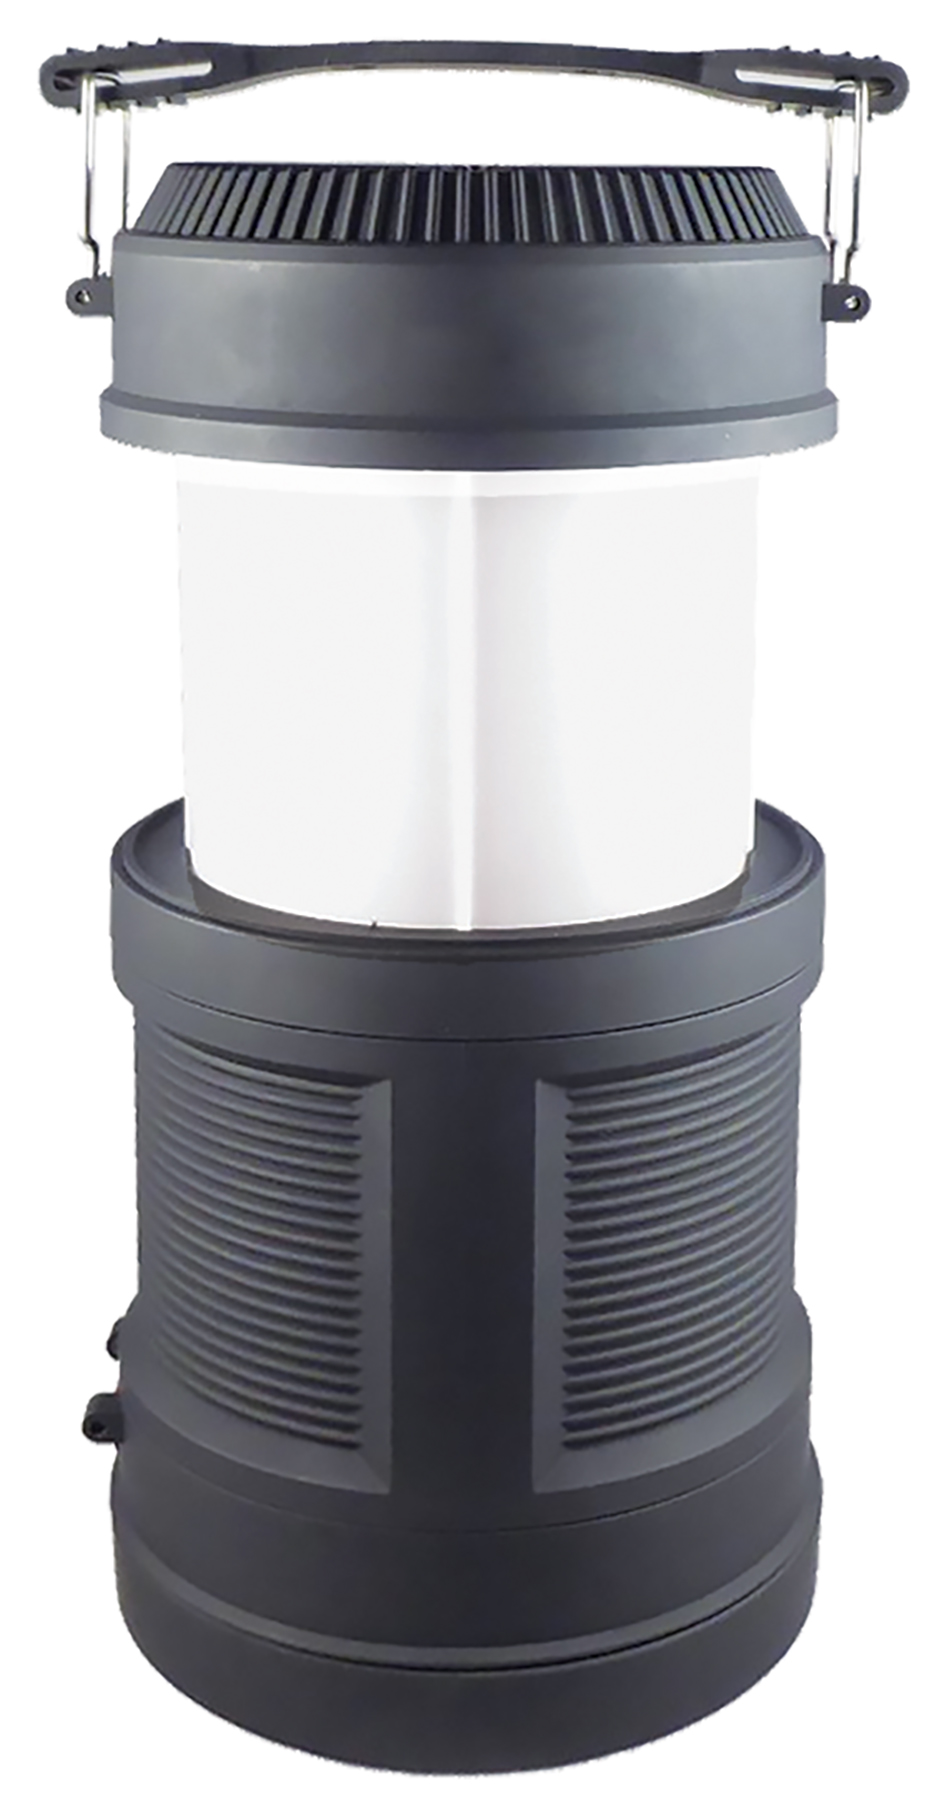 Lanterne télescopique + Torche - Jusqu'à 300 lm - étanche IPX4 - 6908BG_0